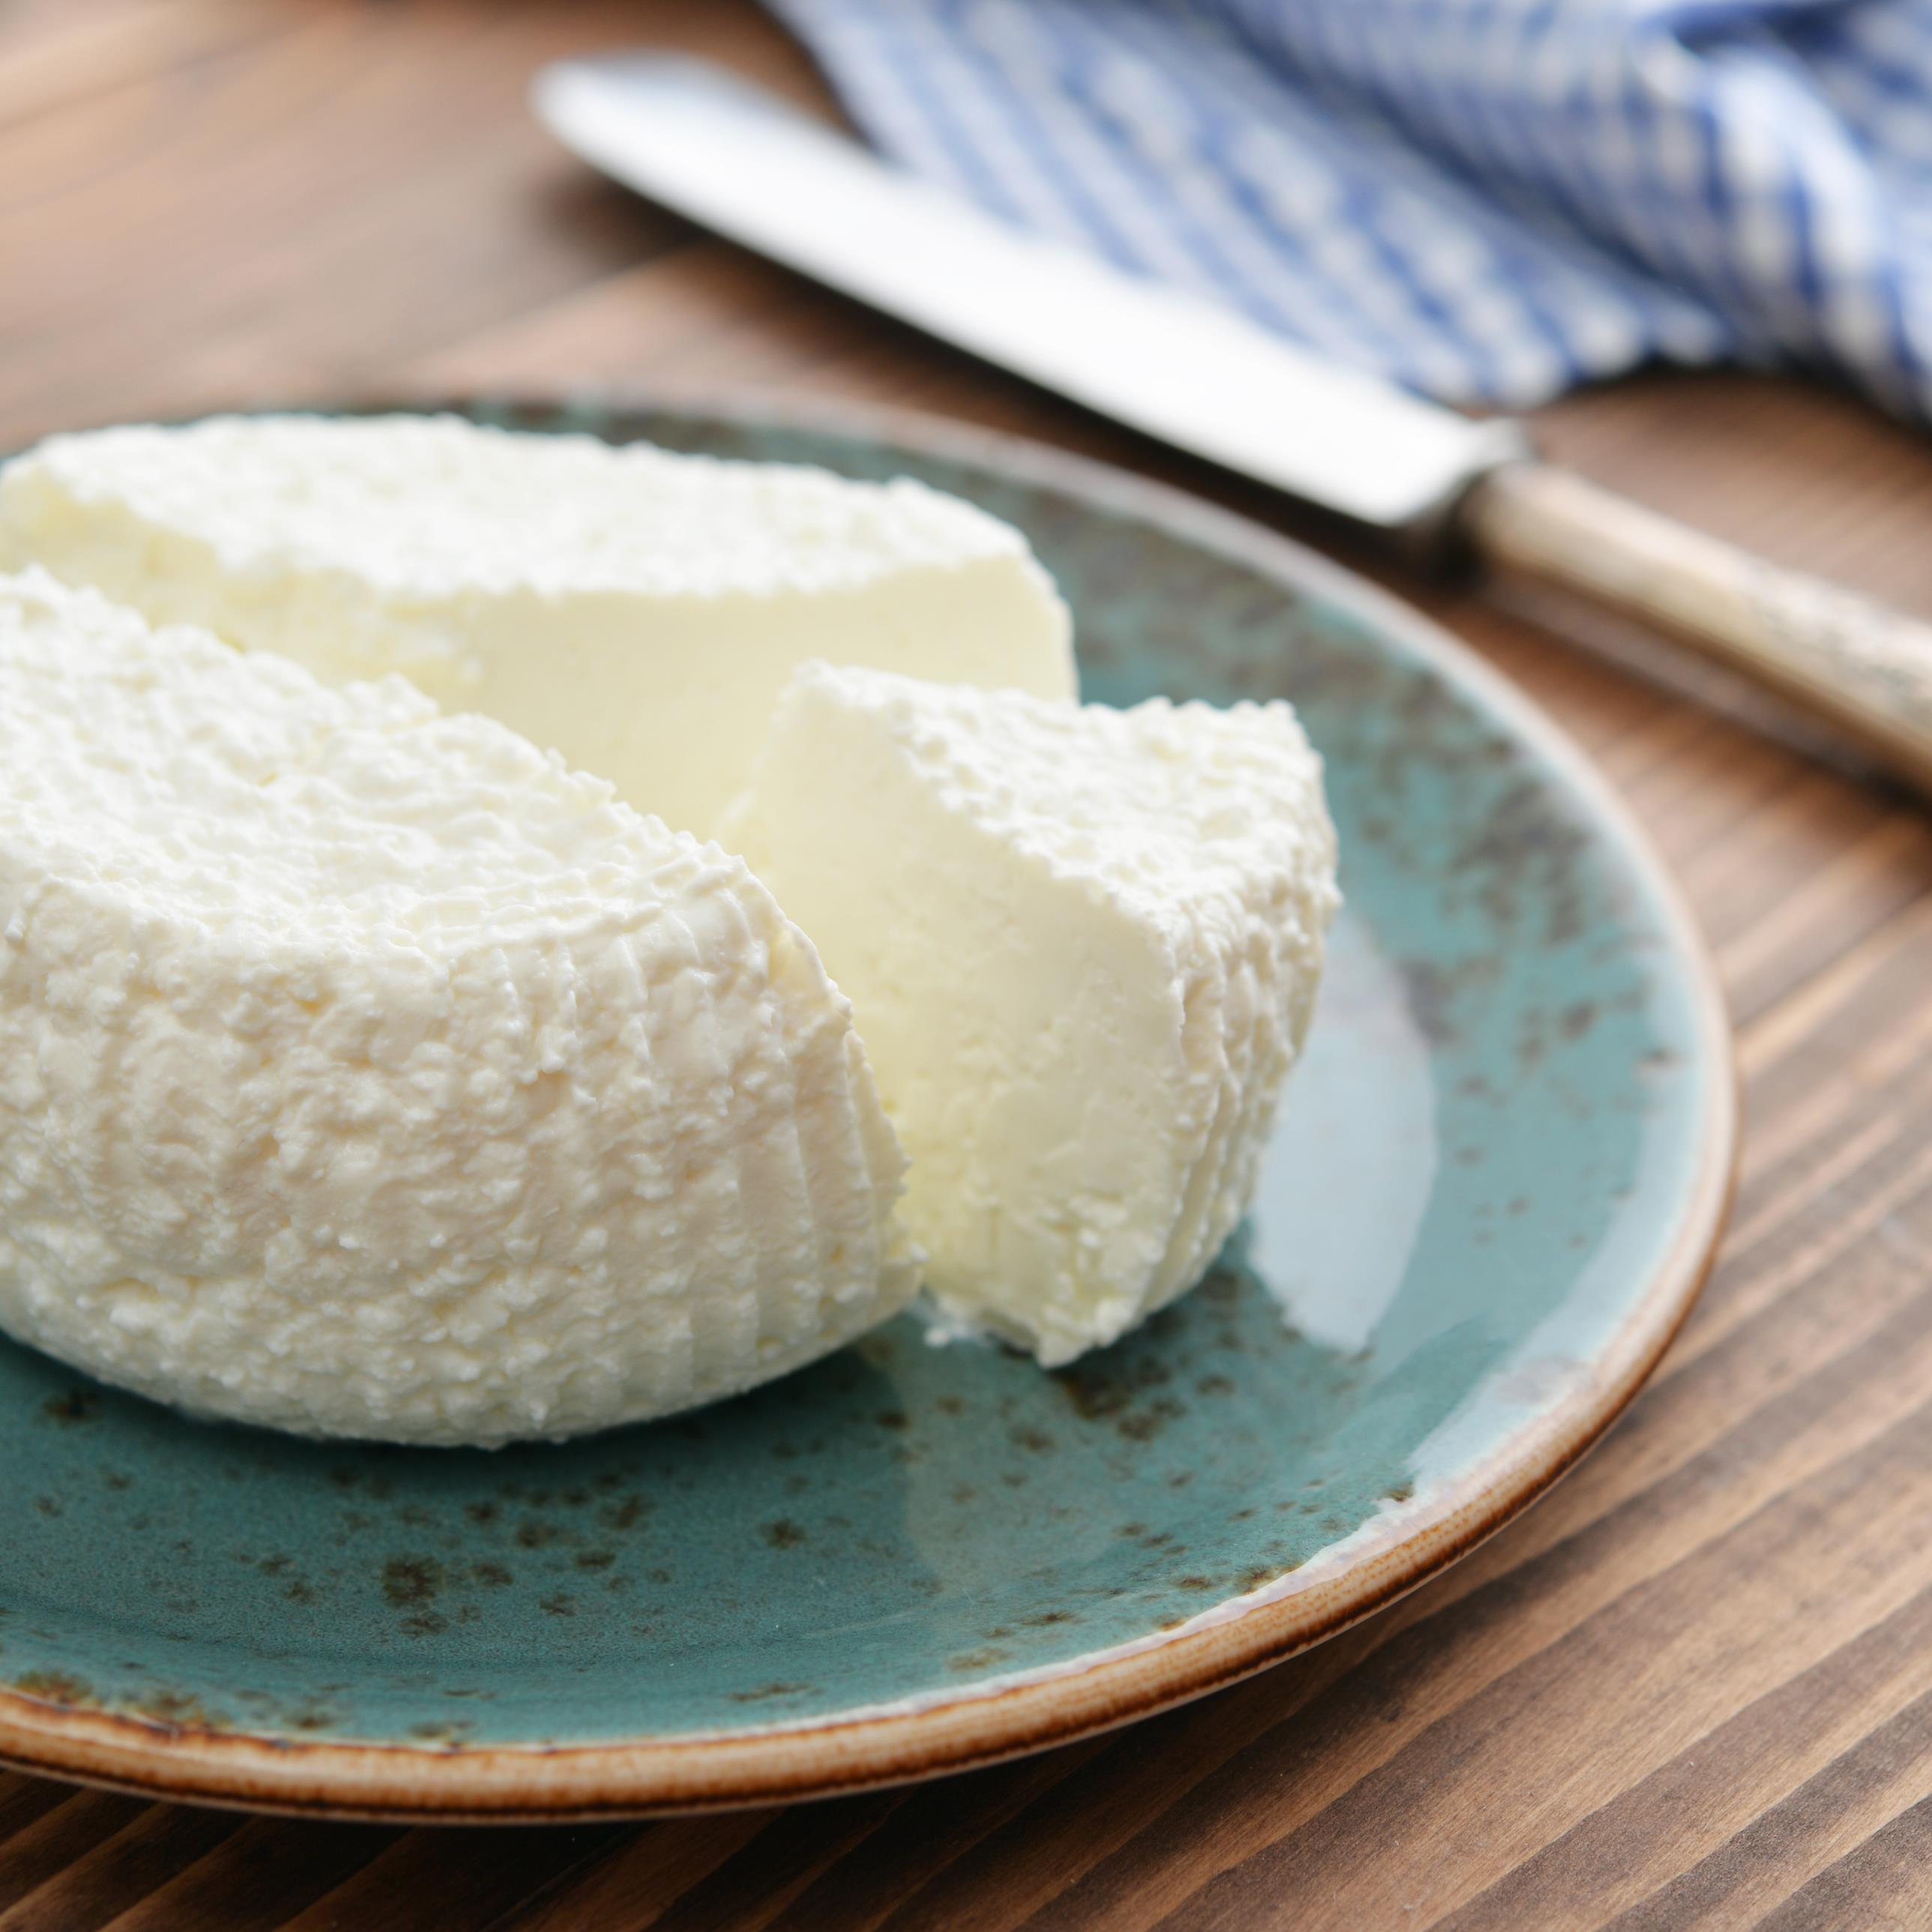 Les secrets du fromage à la maison, selon un fromager amateur